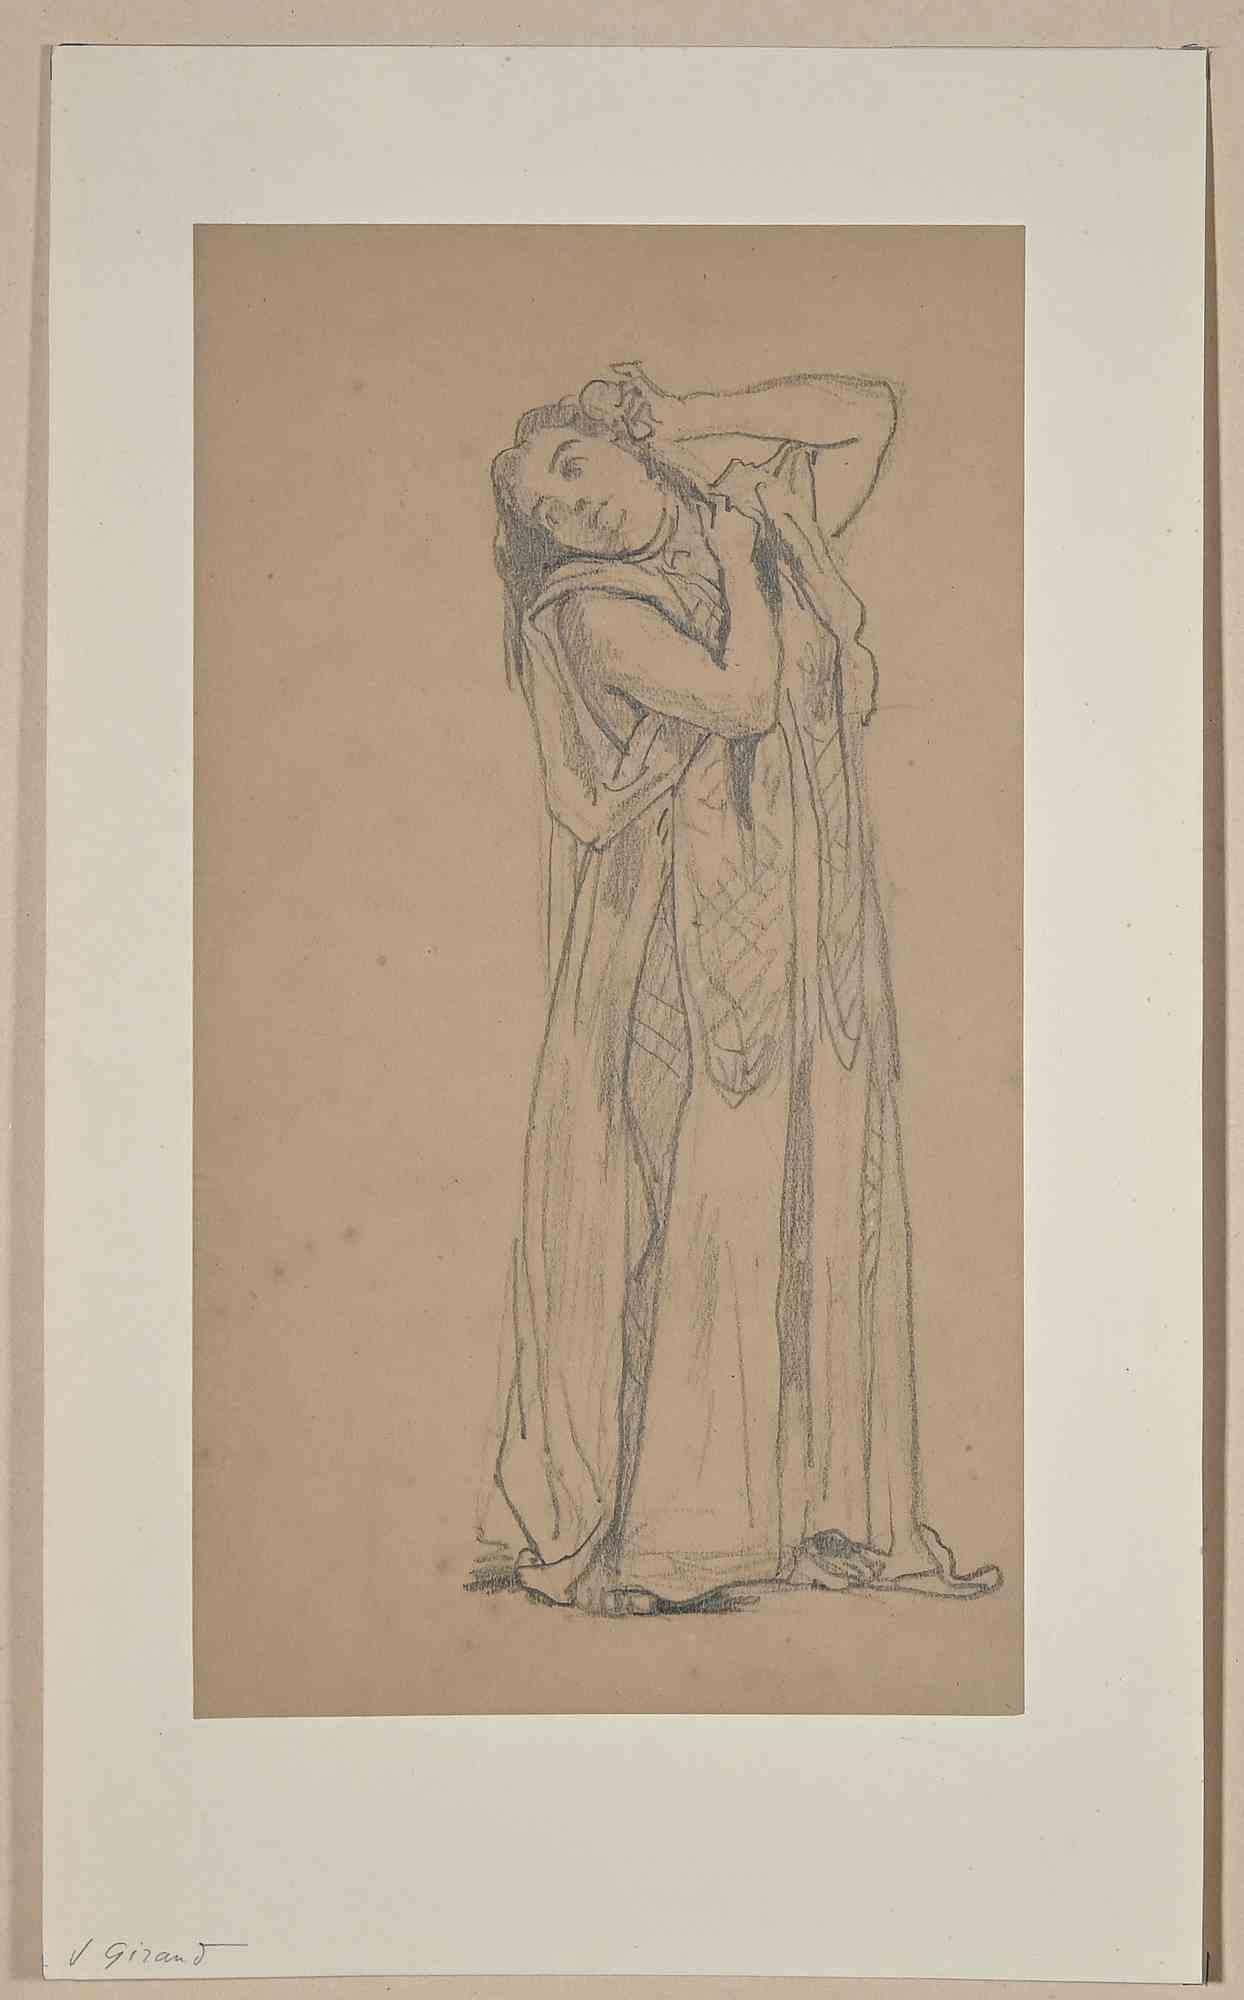 Young Lady est un dessin original au crayon réalisé par Eugène Giraud à la fin du 19ème siècle.

Appliqué sur un carton, inclus un Passepartout bleu : 41 x 33 cm

Bonnes conditions.

La délicatesse et la beauté des traits fins de l'œuvre témoignent